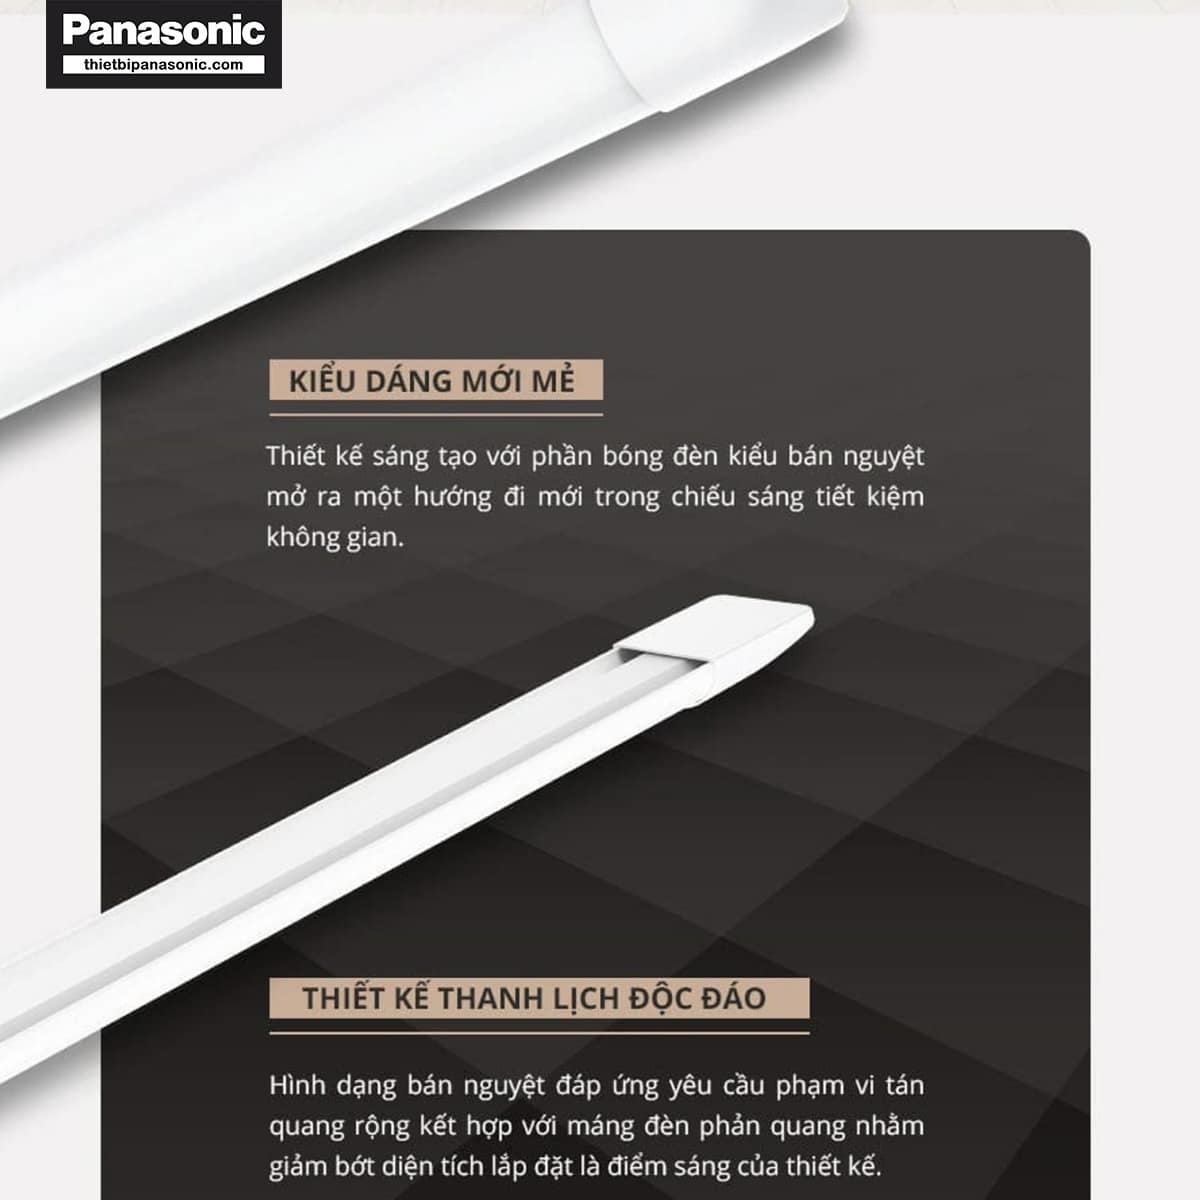 Bóng Đèn bán nguyệt Panasonic có thiết kế thông minh